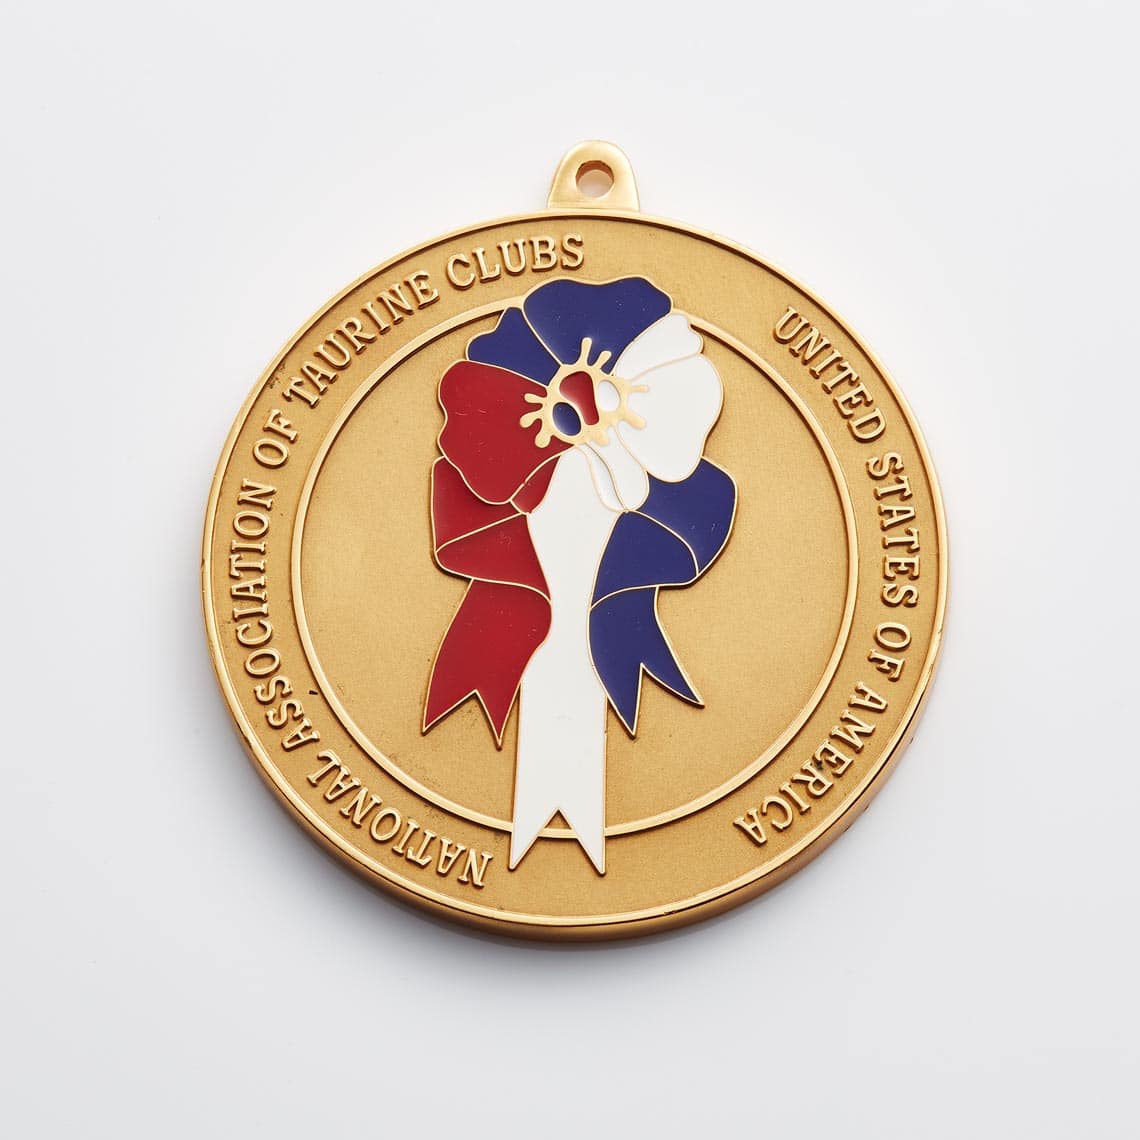 TAURINE CLUBS - Custom Company Medallions